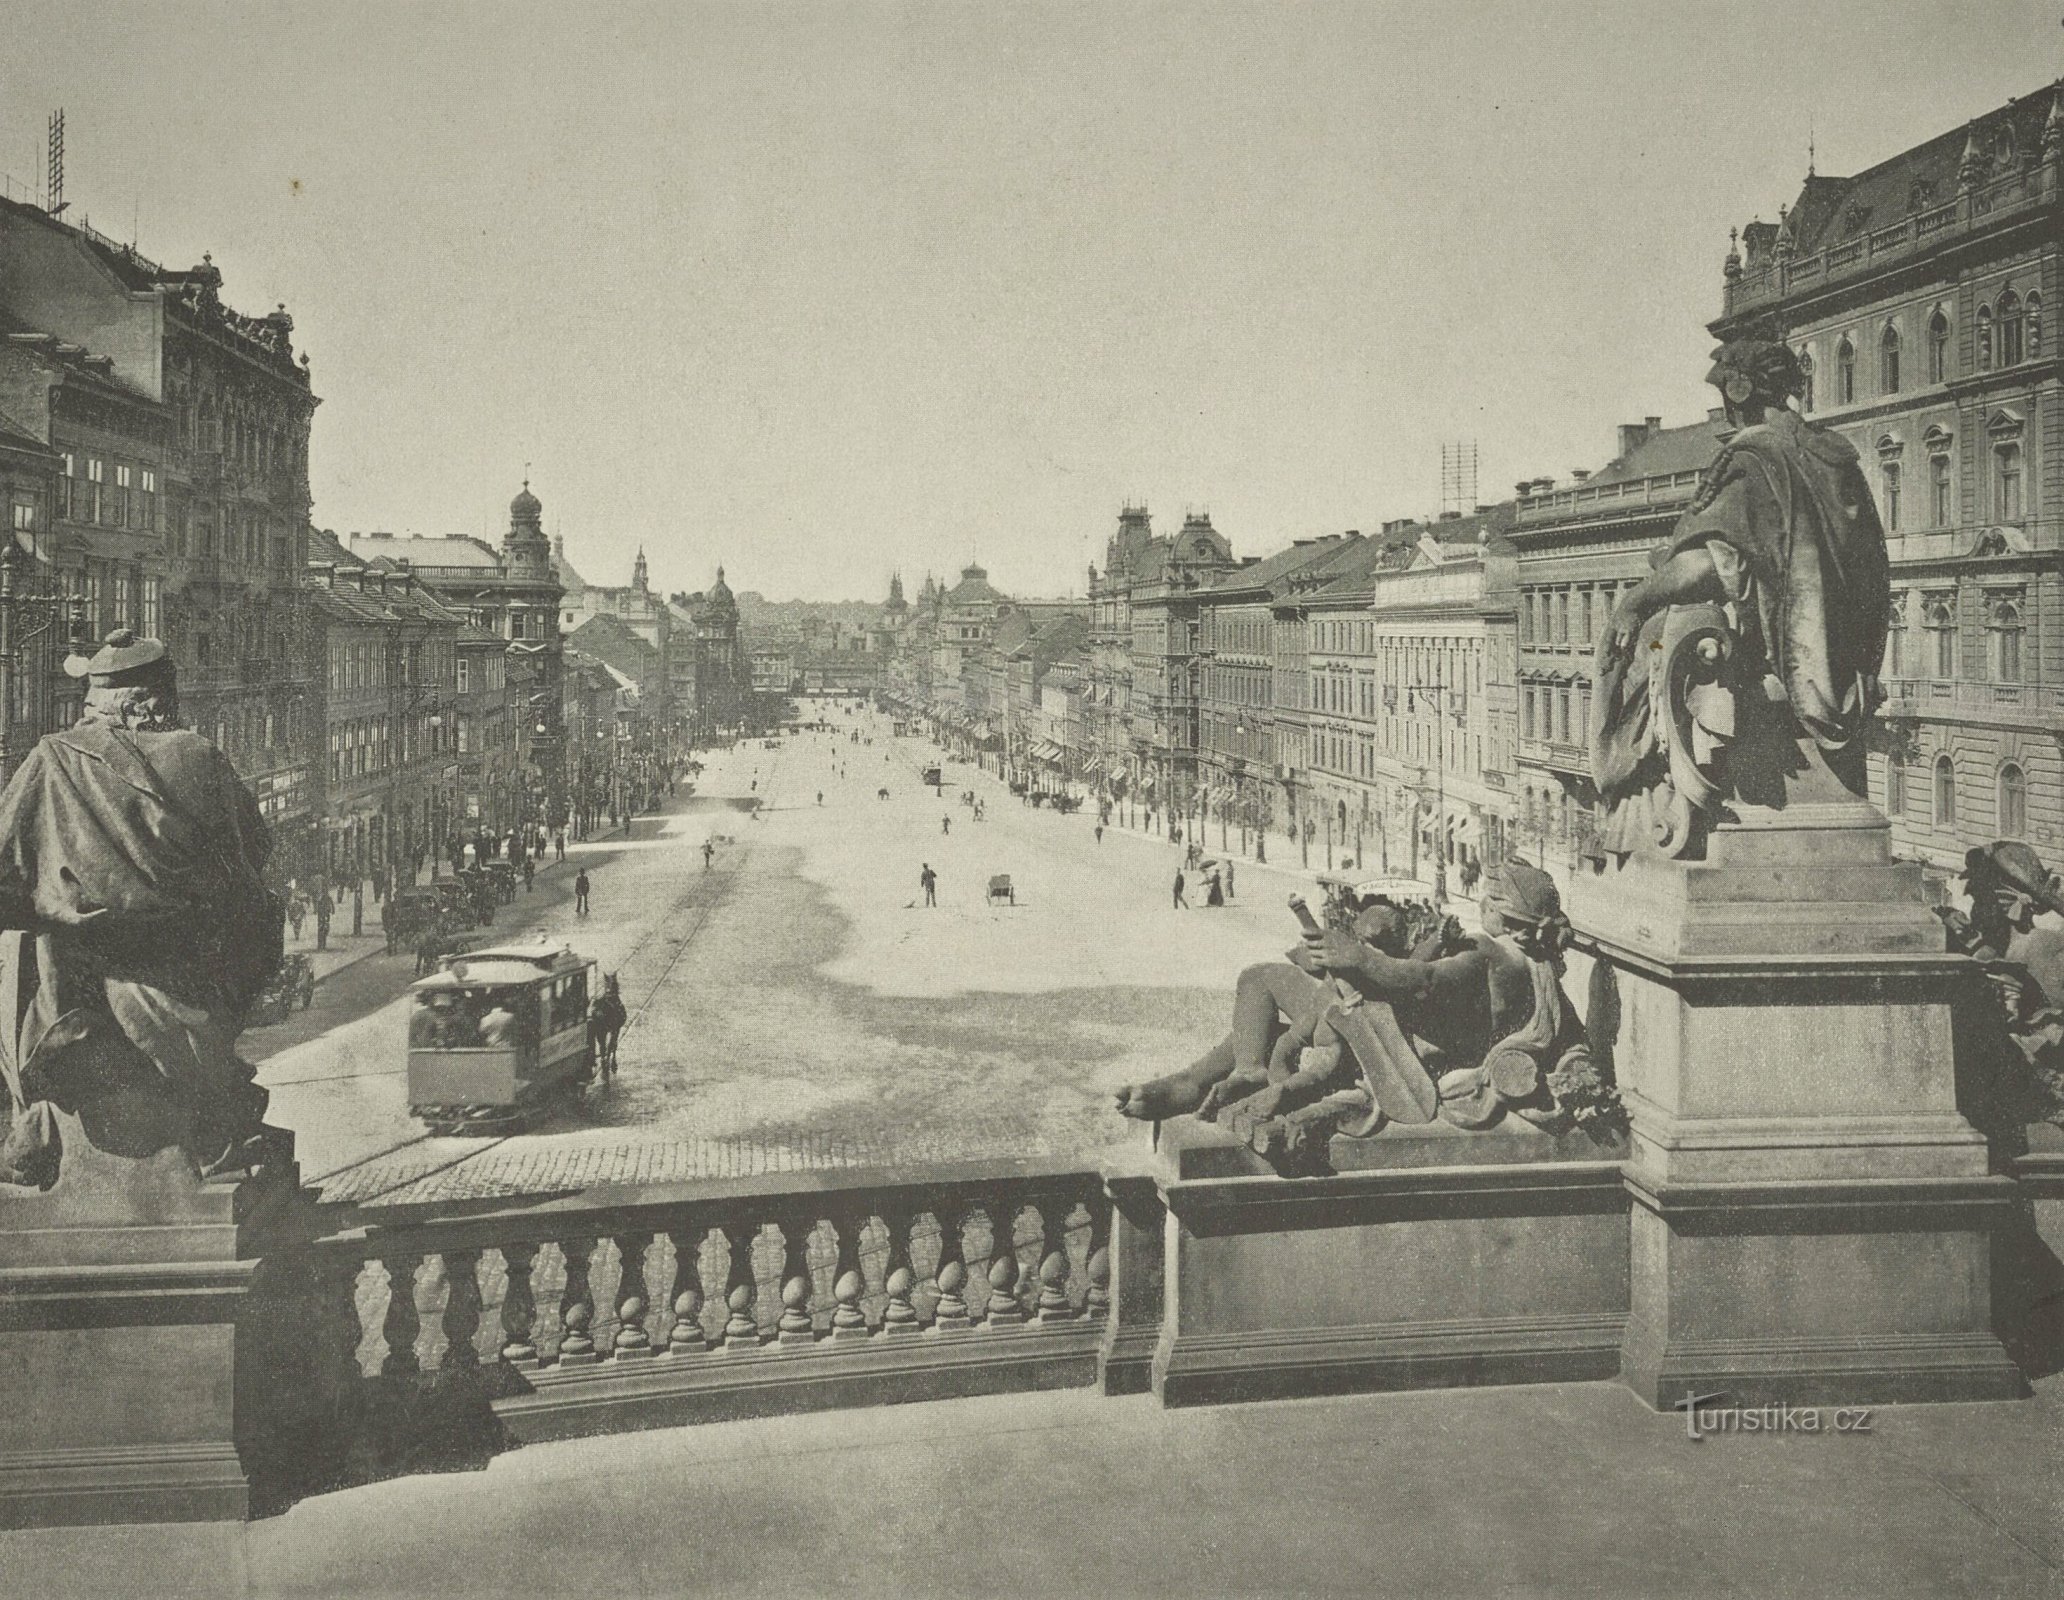 Άποψη της πλατείας Wenceslas της Πράγας από το Εθνικό Μουσείο (πιθανώς 1897-1898)